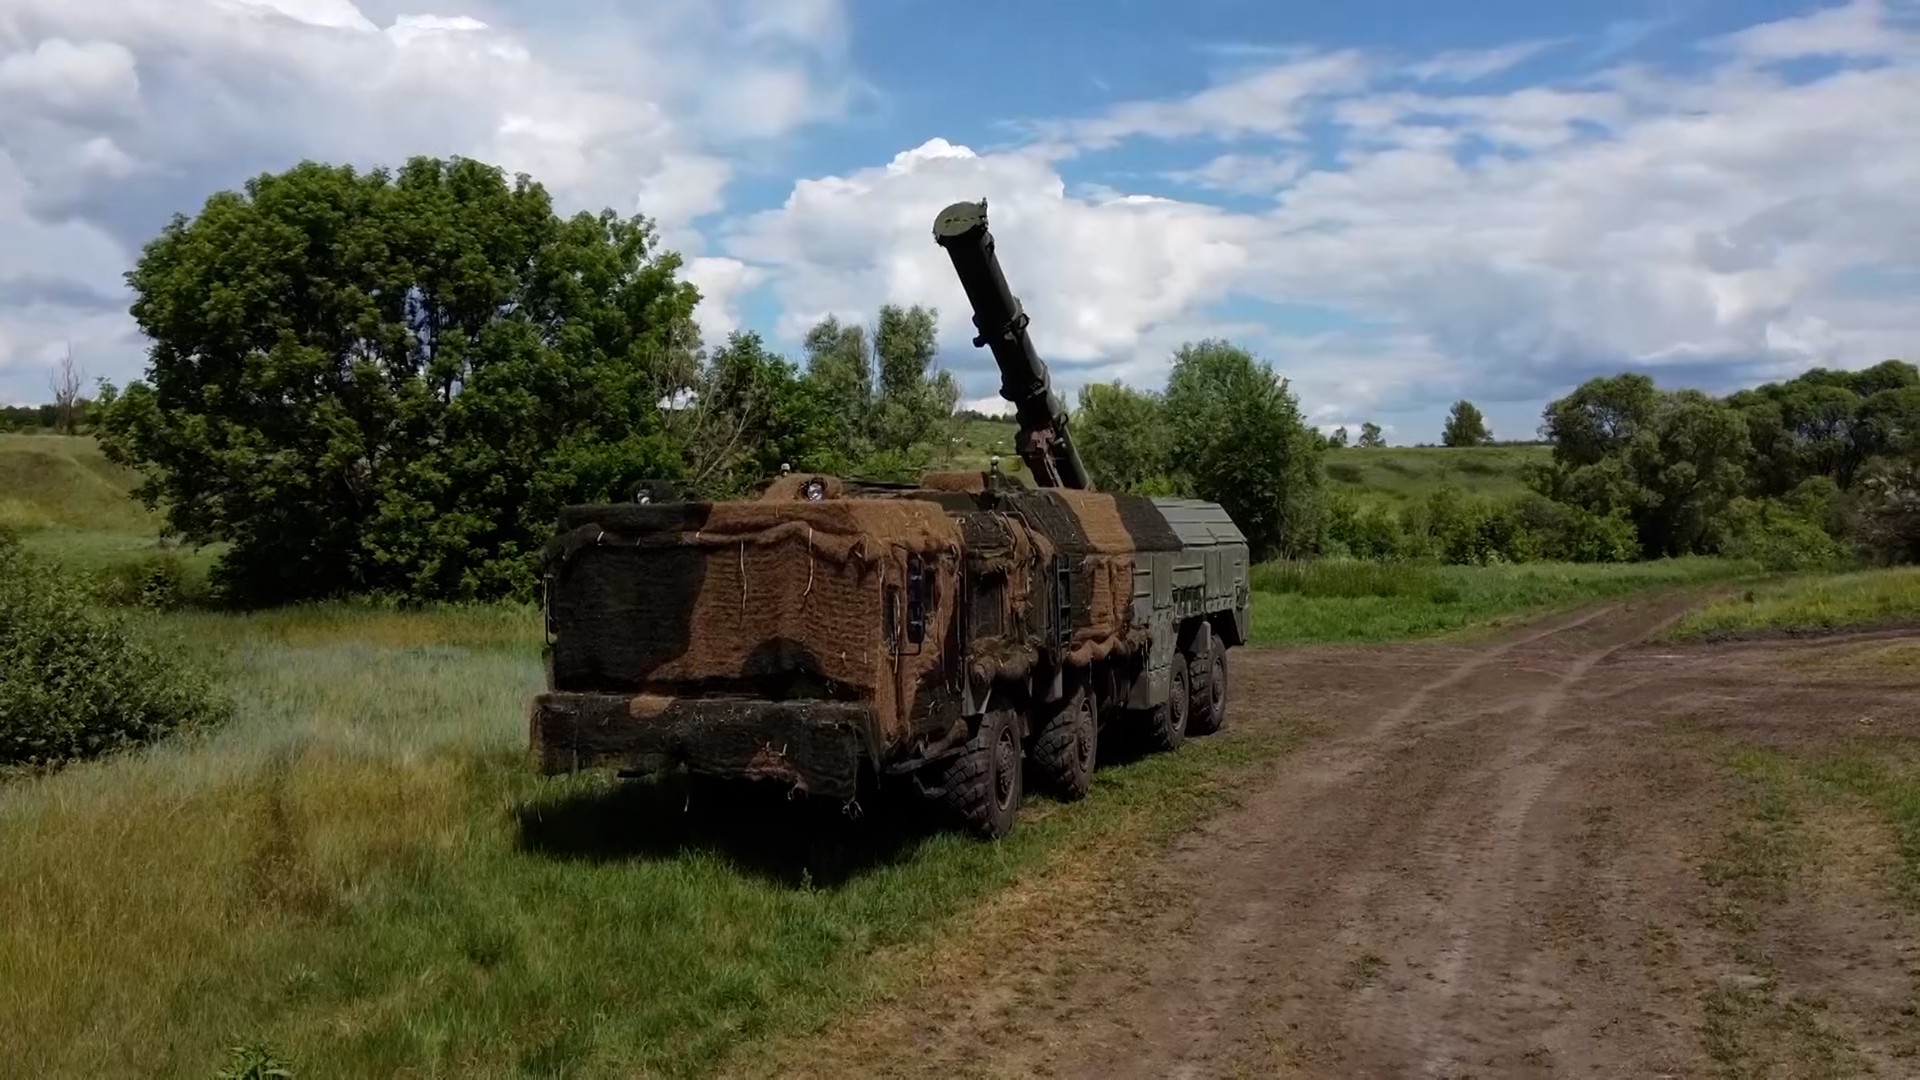 Минск проведёт проверку ВС с привлечением средств применения ядерных боеприпасов